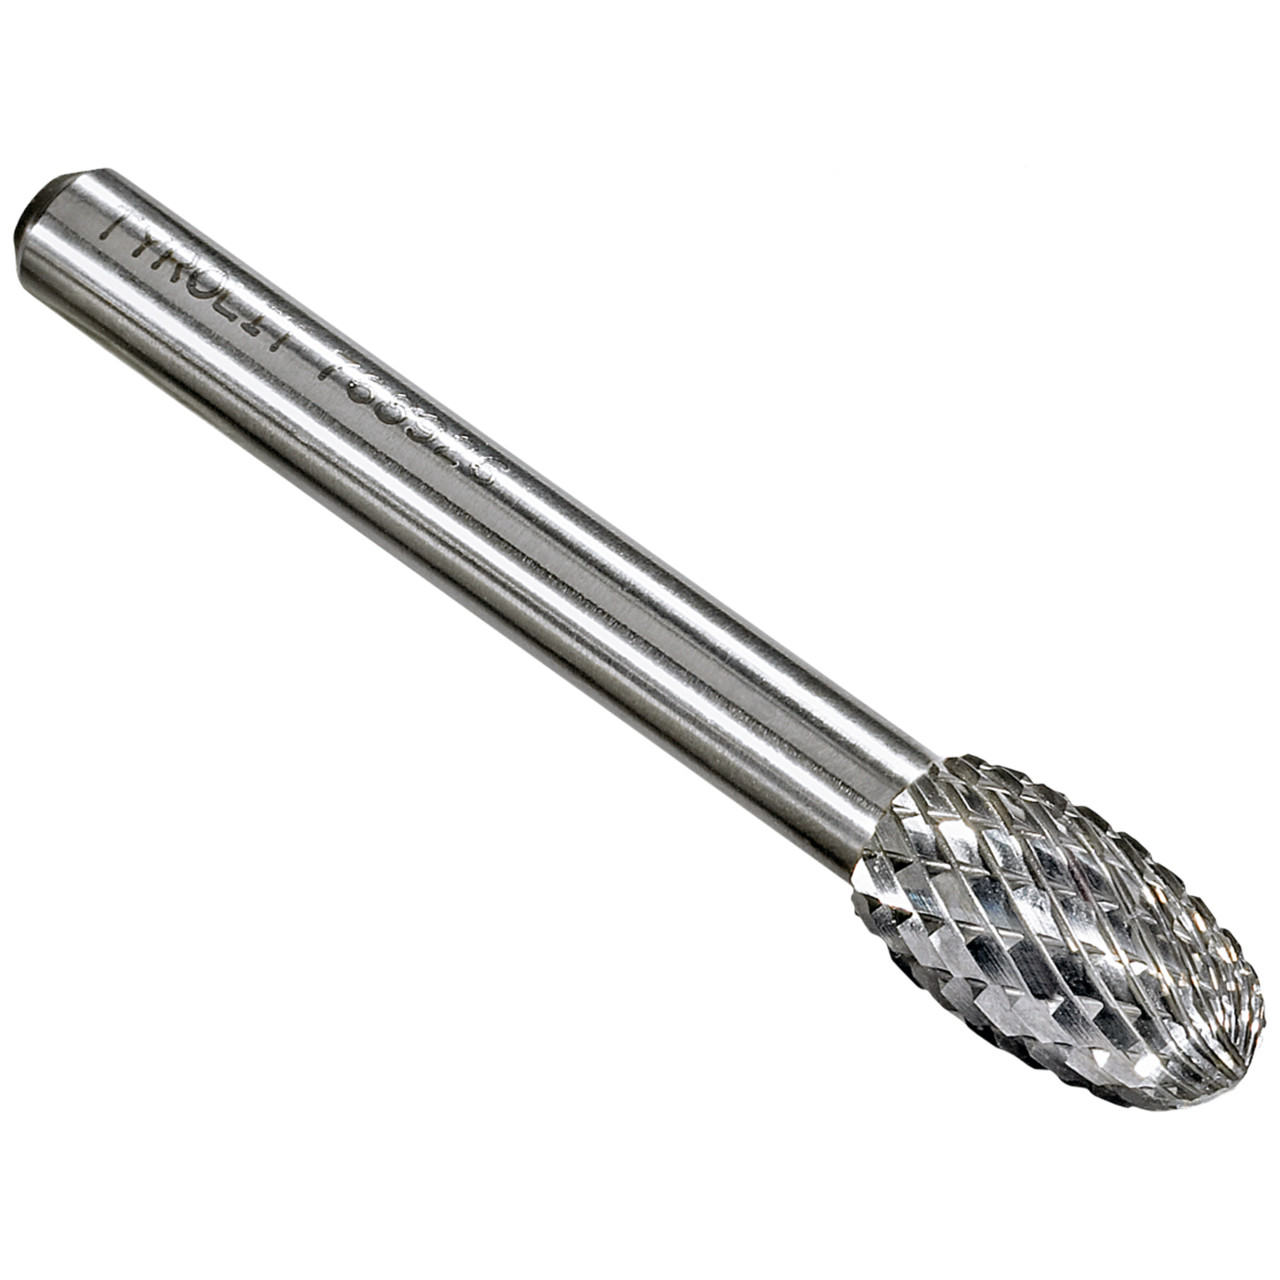 TYROLIT hardmetalen frees DxT-SxL 12x22-6x67 Voor gietijzer, staal en roestvrij staal, vorm: 52TRE - druppel, Art. 768929